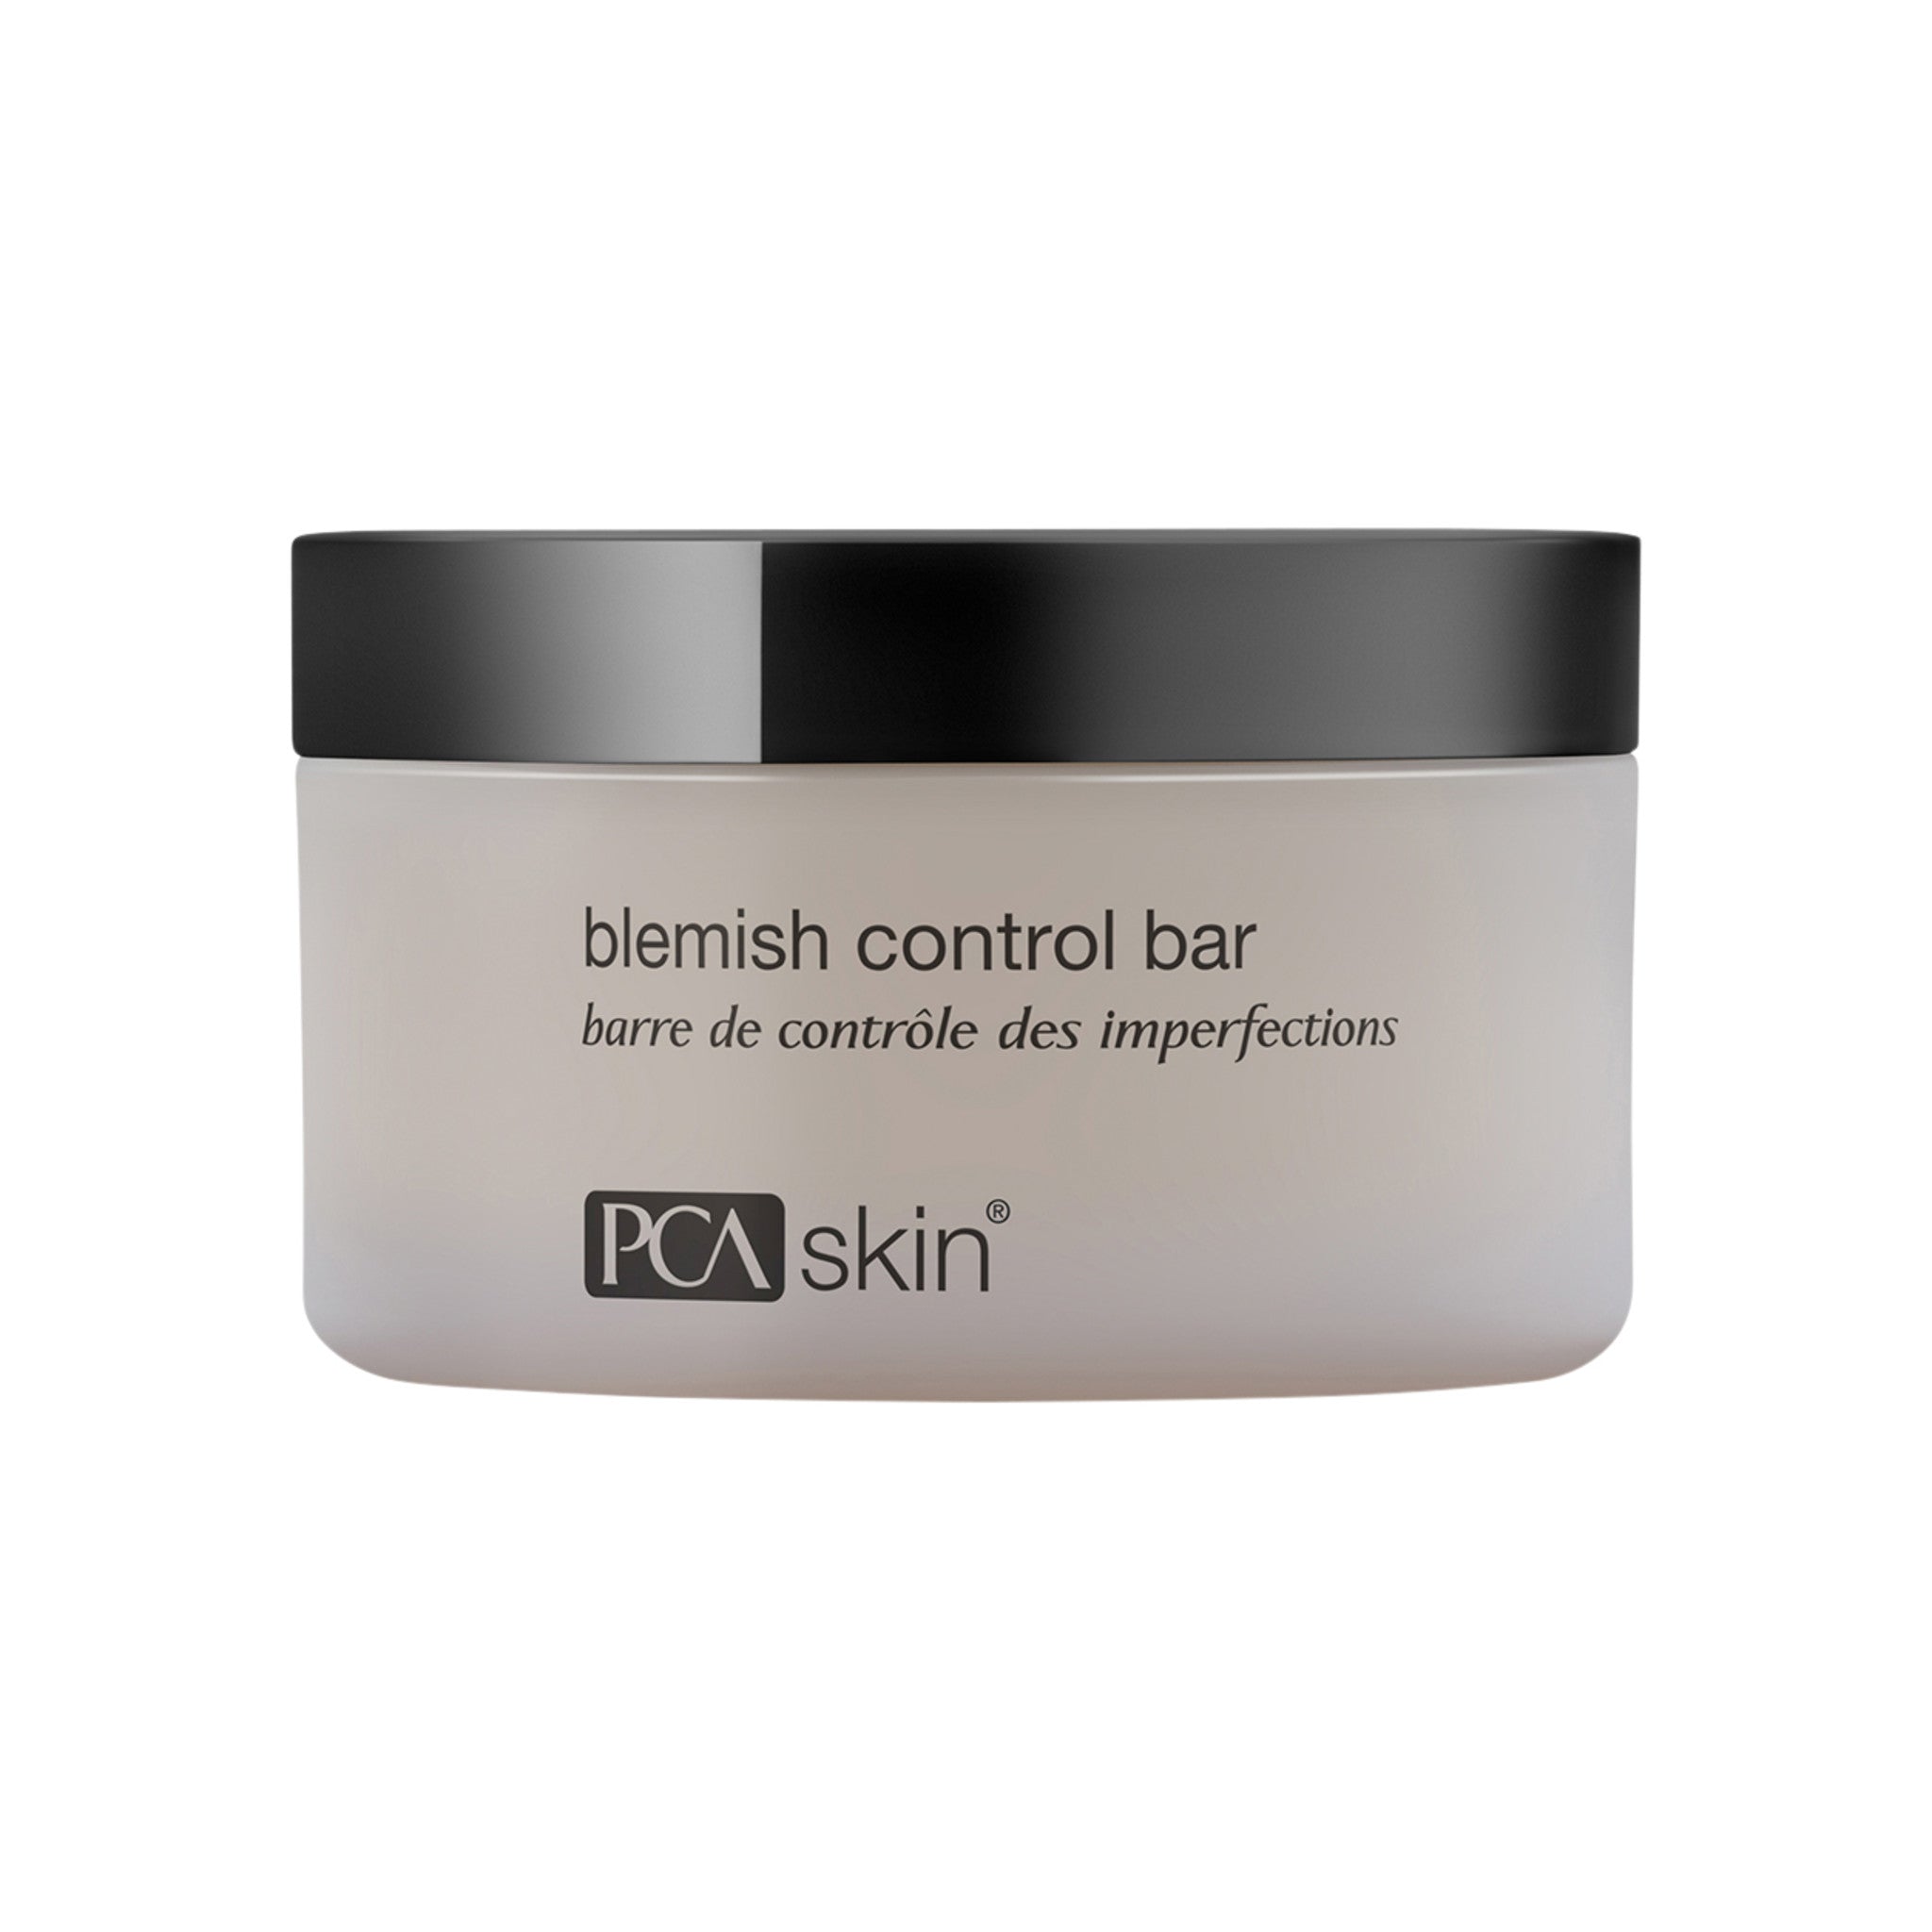 PCA Skin Blemish Control Bar main image.